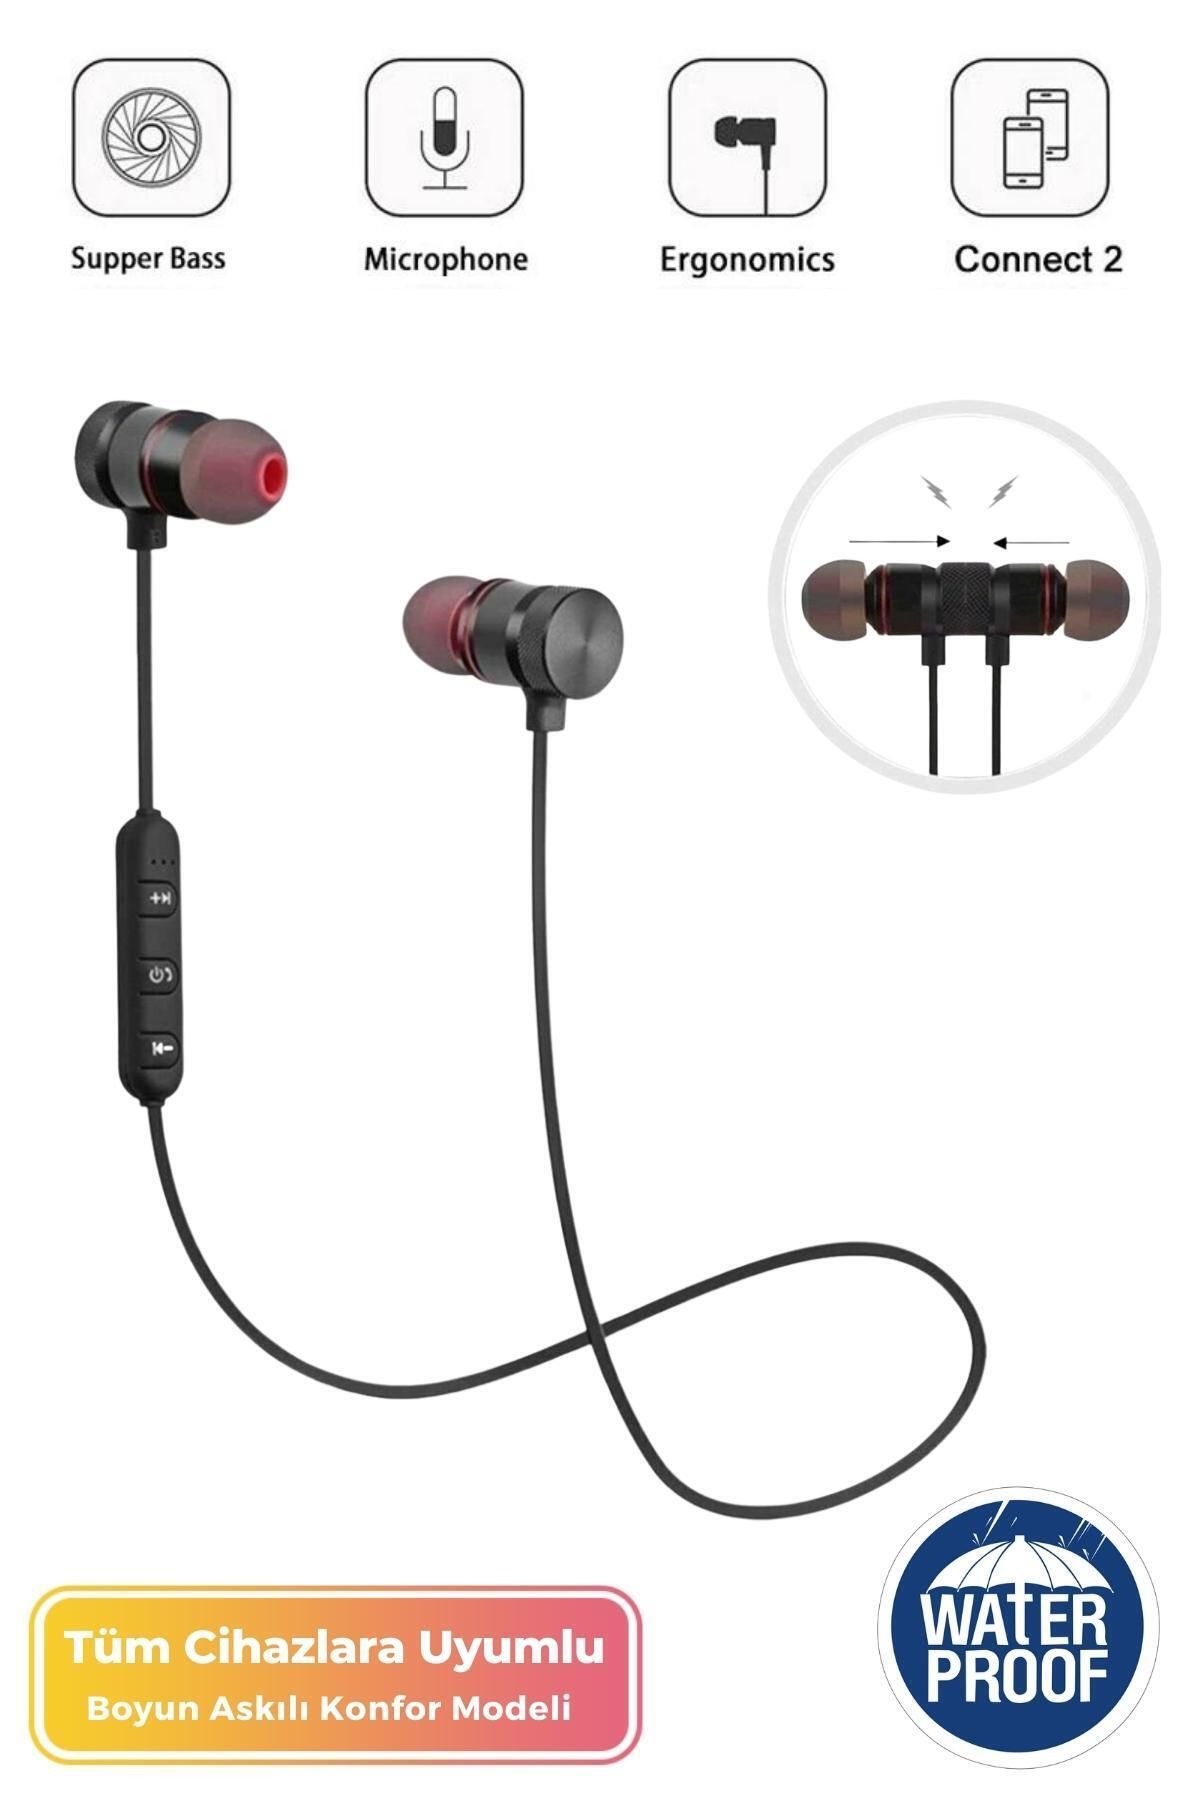 Noriyen Kısa Süreli Fırsat Ürünü Mikrofonlu Mıknatıslı Boyun Askılı Kablolu Ofis & Sporcu Bluetooth Kulaklık